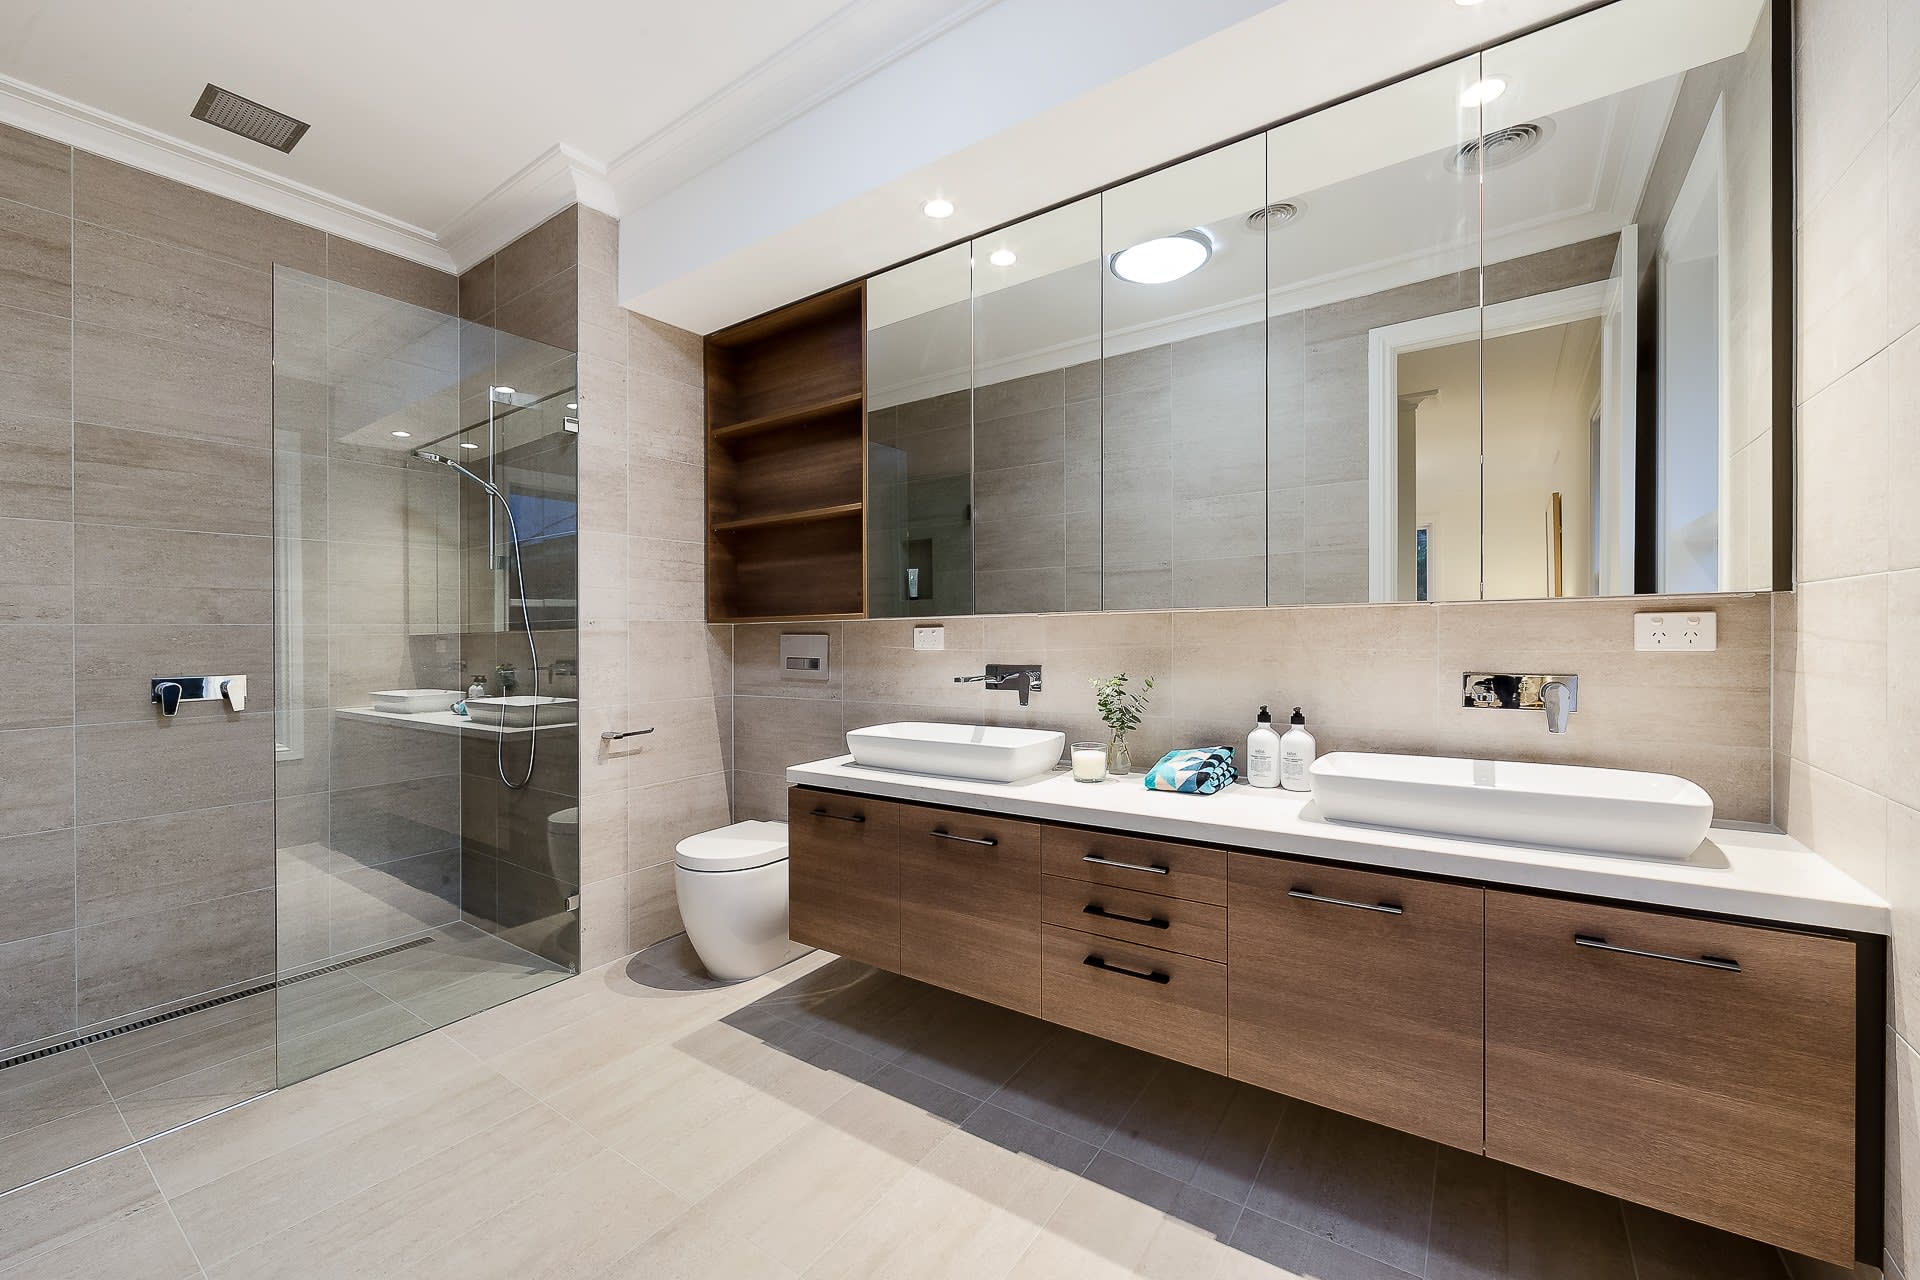 Baño moderno con base de madera para lavabos blancos radiador para